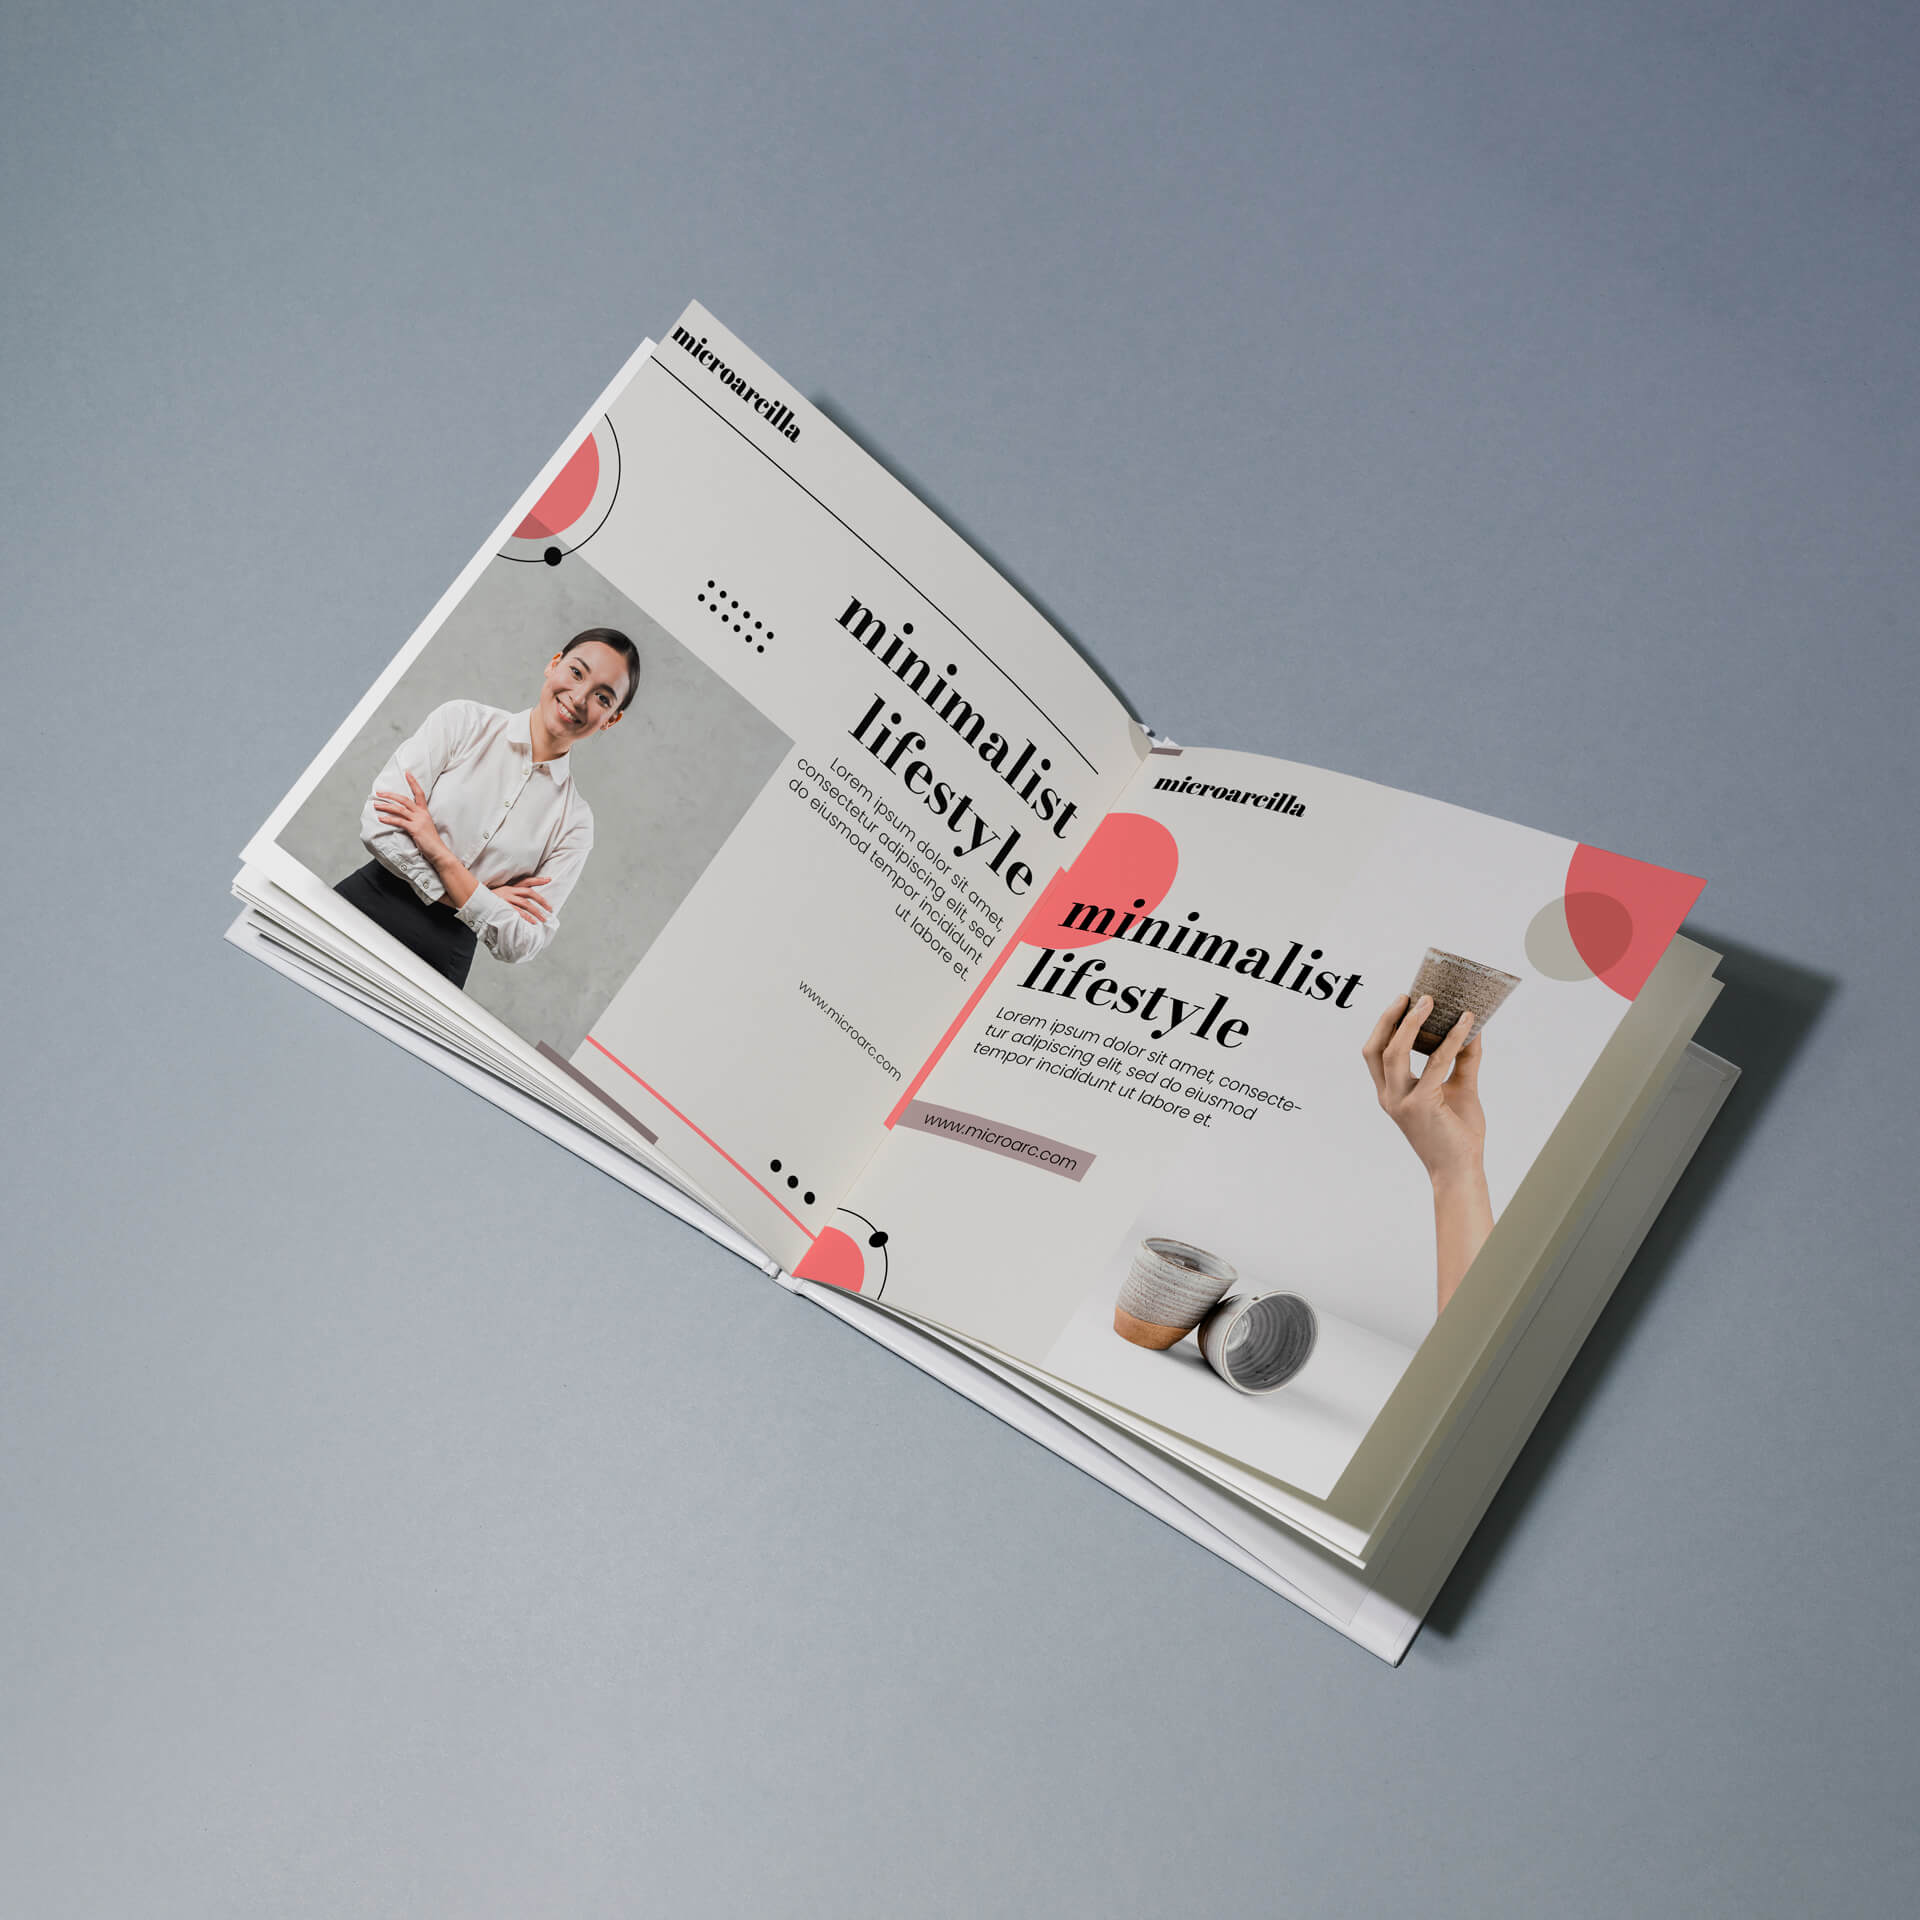 Imagen de un catálogo cuadrado, encuadernado en cartoné, de la empresa microarcilla, abierto por la página del estilo minimalista.